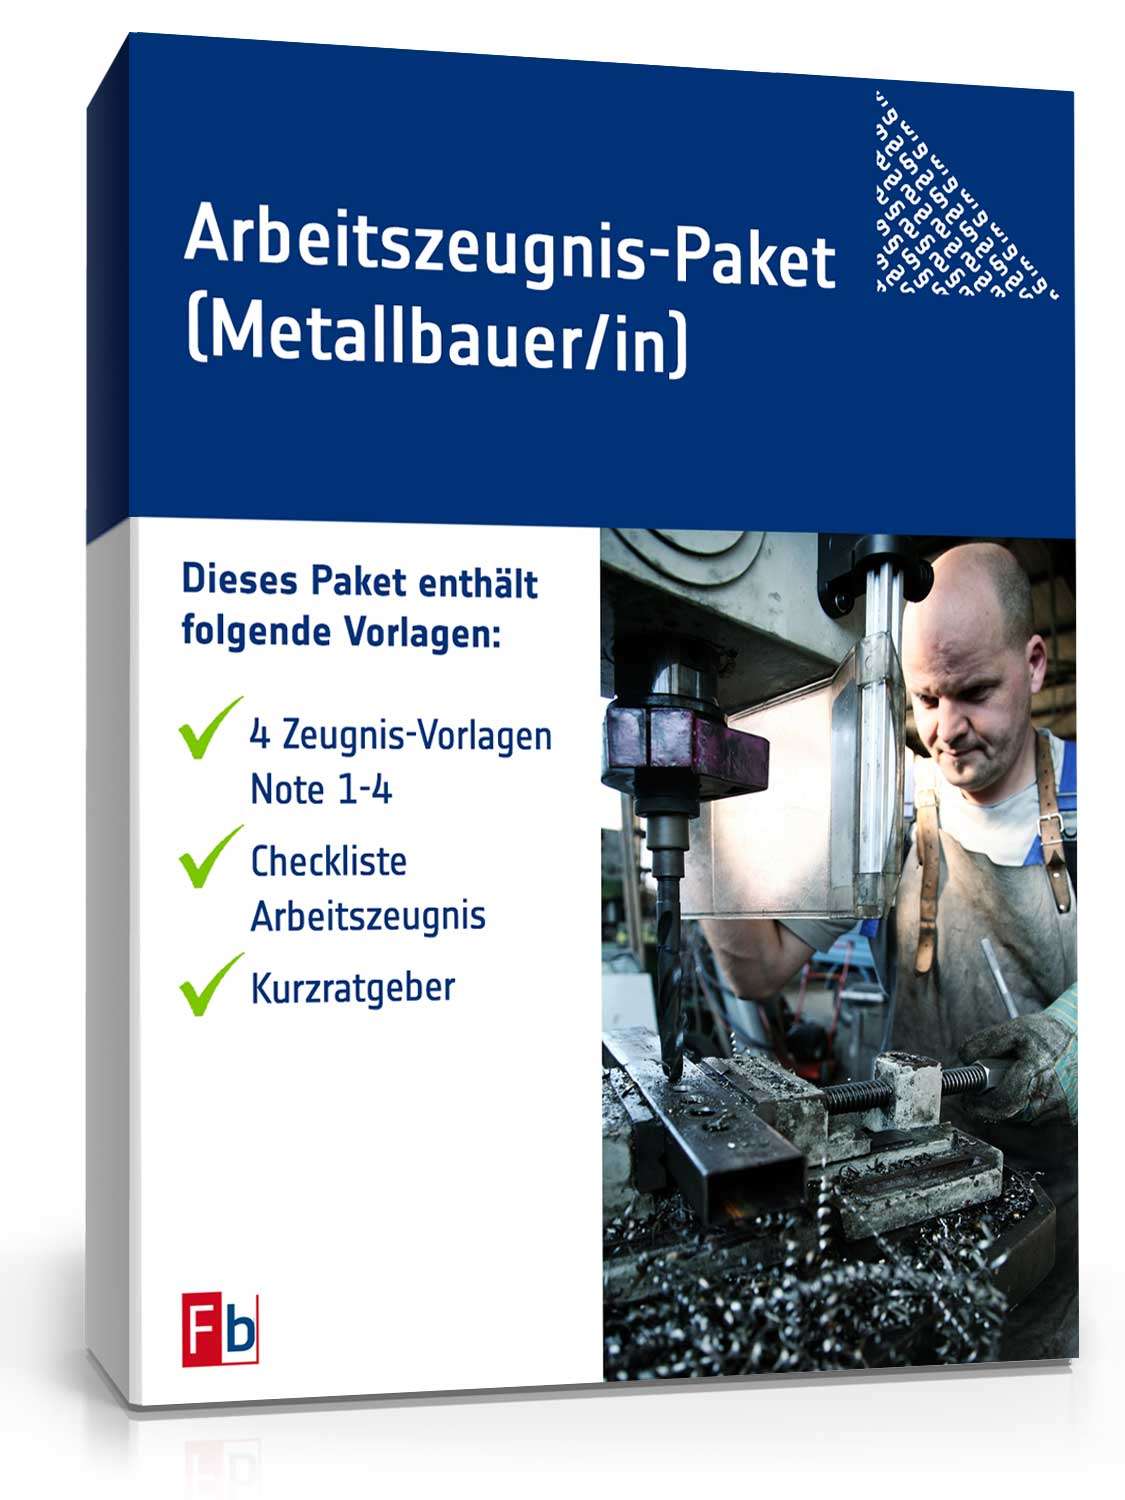 Hauptbild des Produkts: Arbeitszeugnis Metallbauer